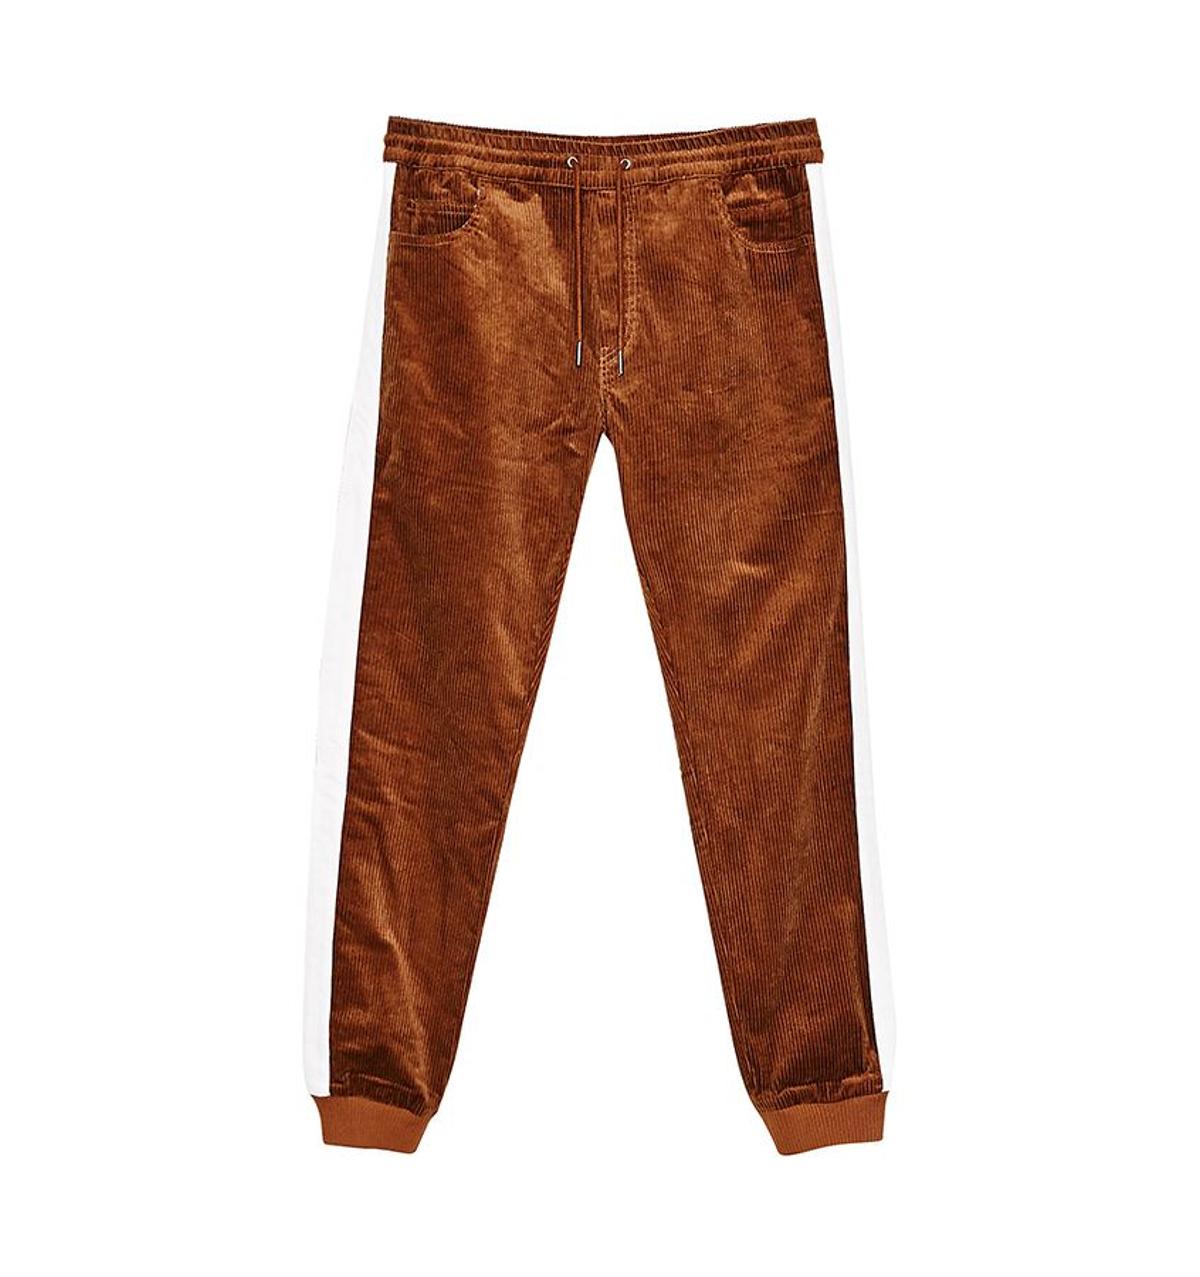 Pantalones de Fedex x Bershka, con detalle en los bajos